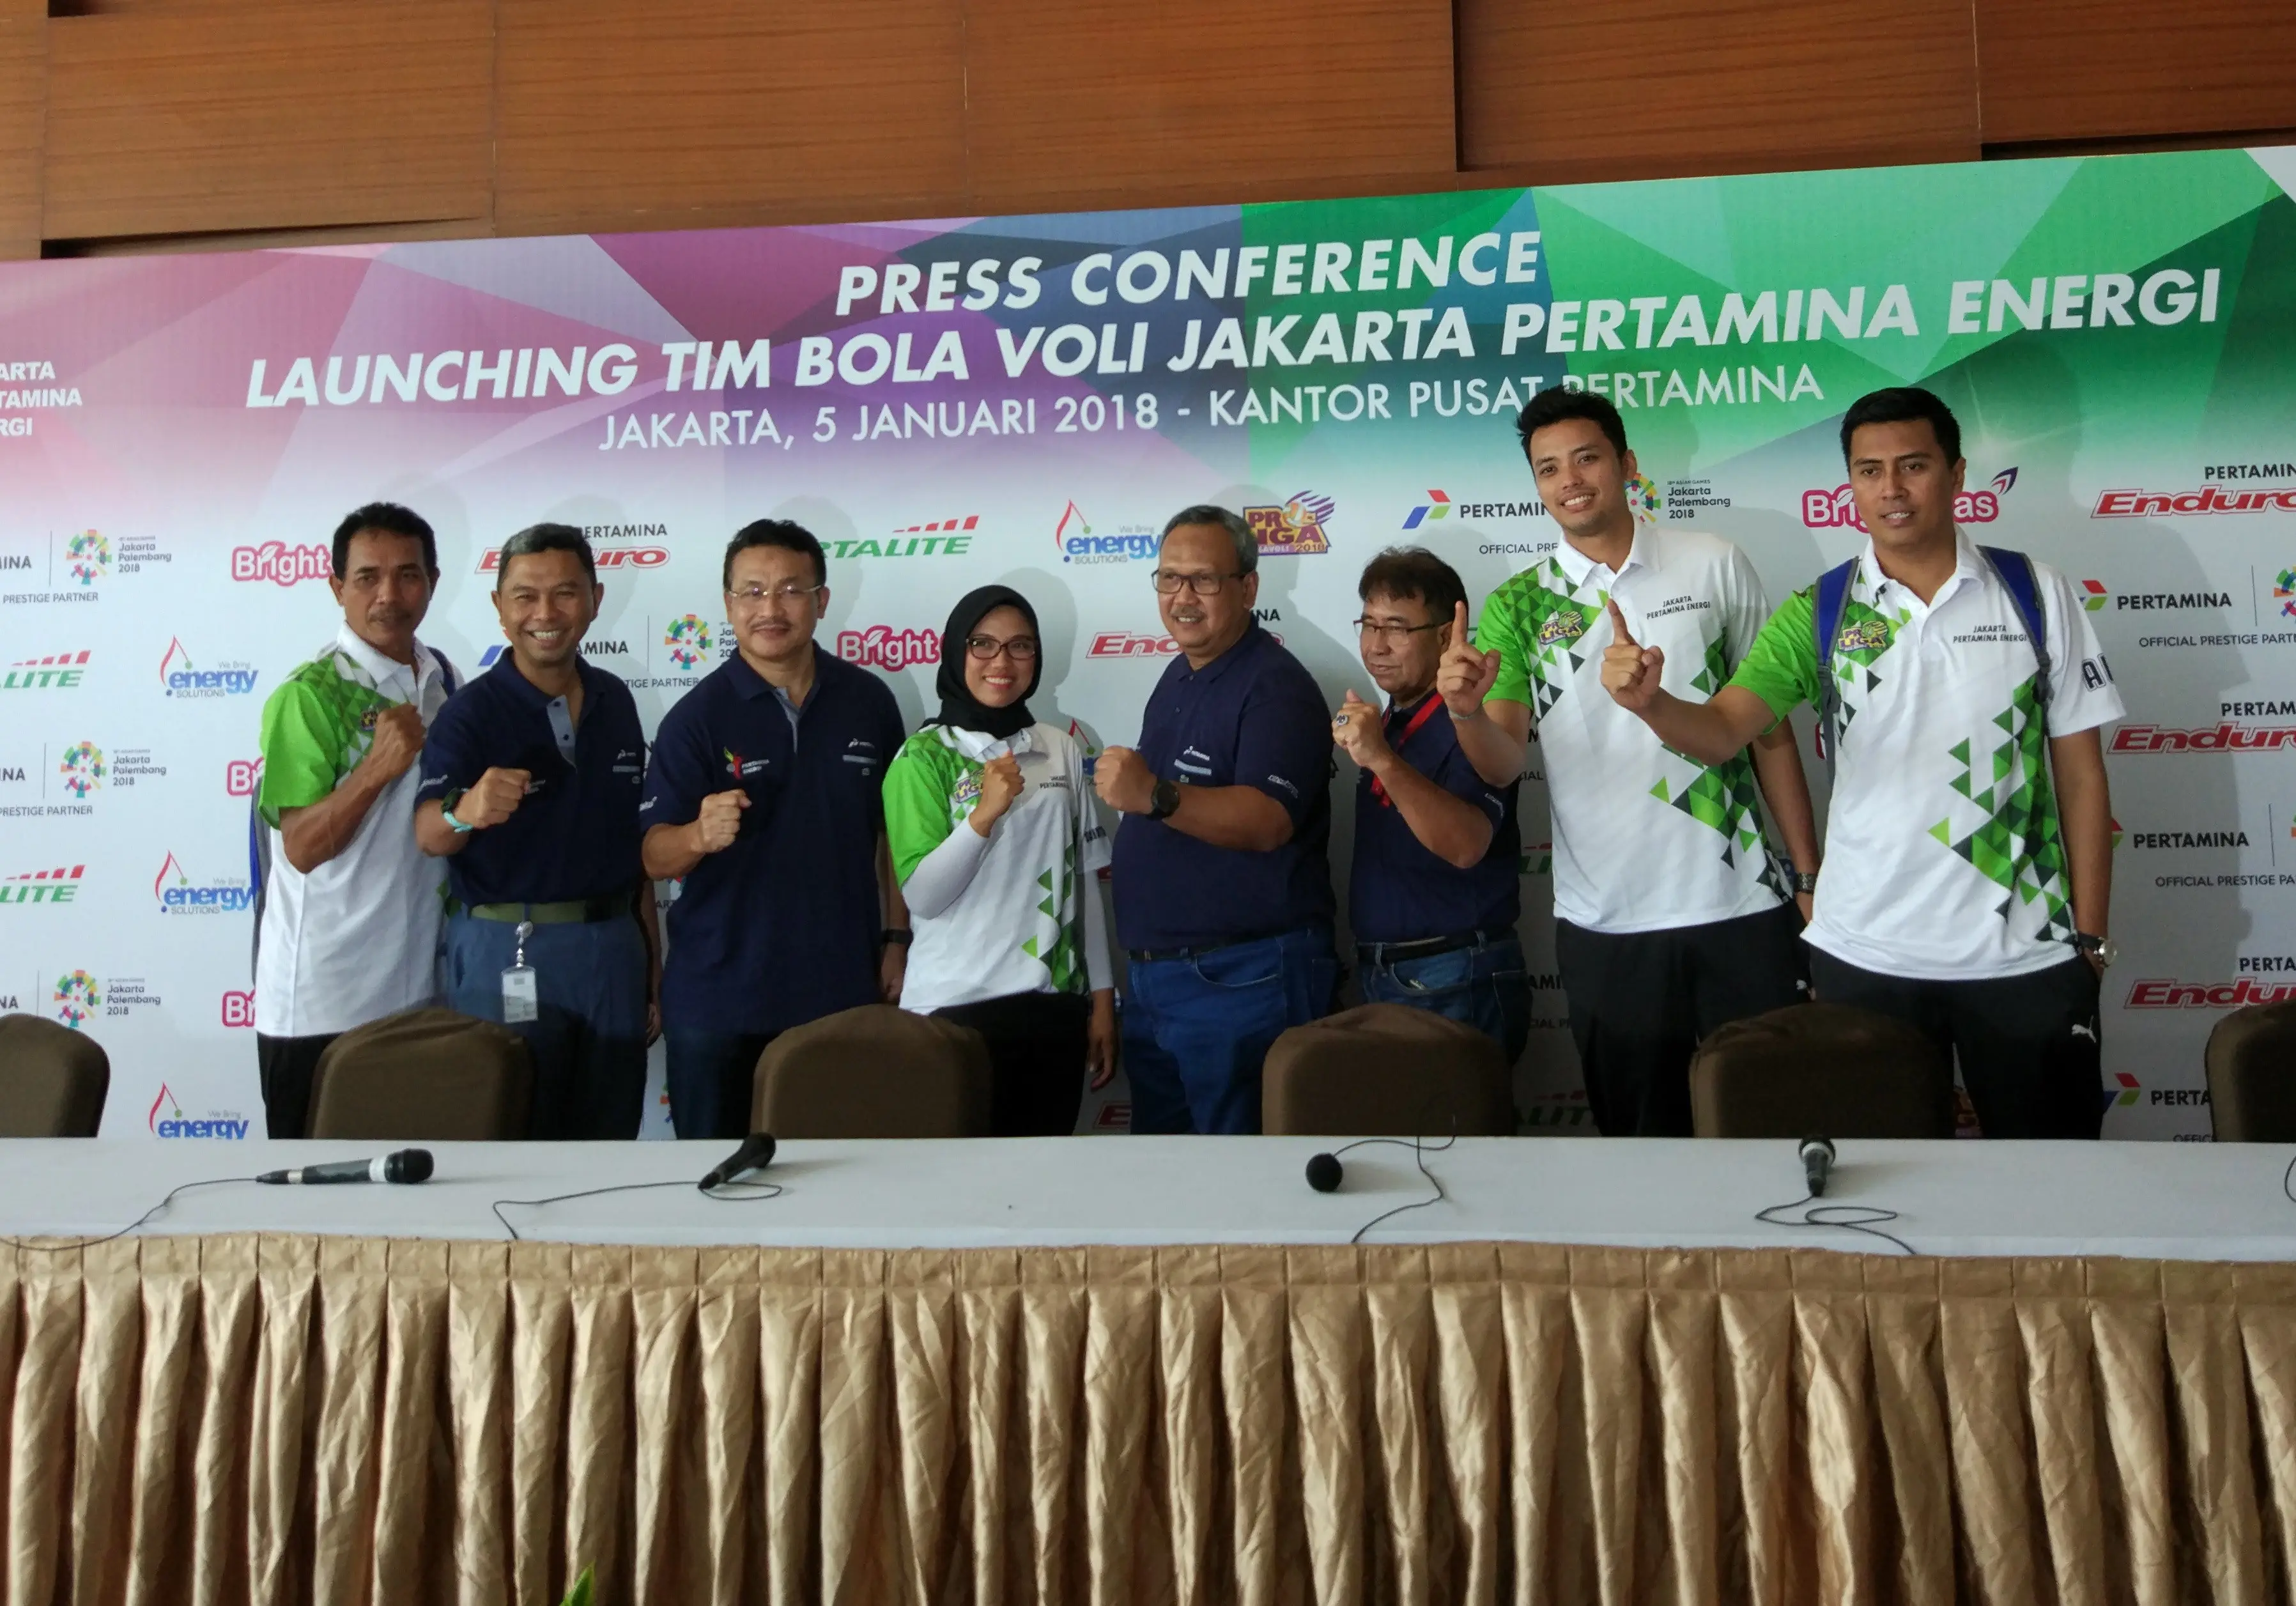 Pelatih Jakarta Permina Energi M Ansori (paling kiri). (Liputan6.com/Ahmad Fawwaz Usman)